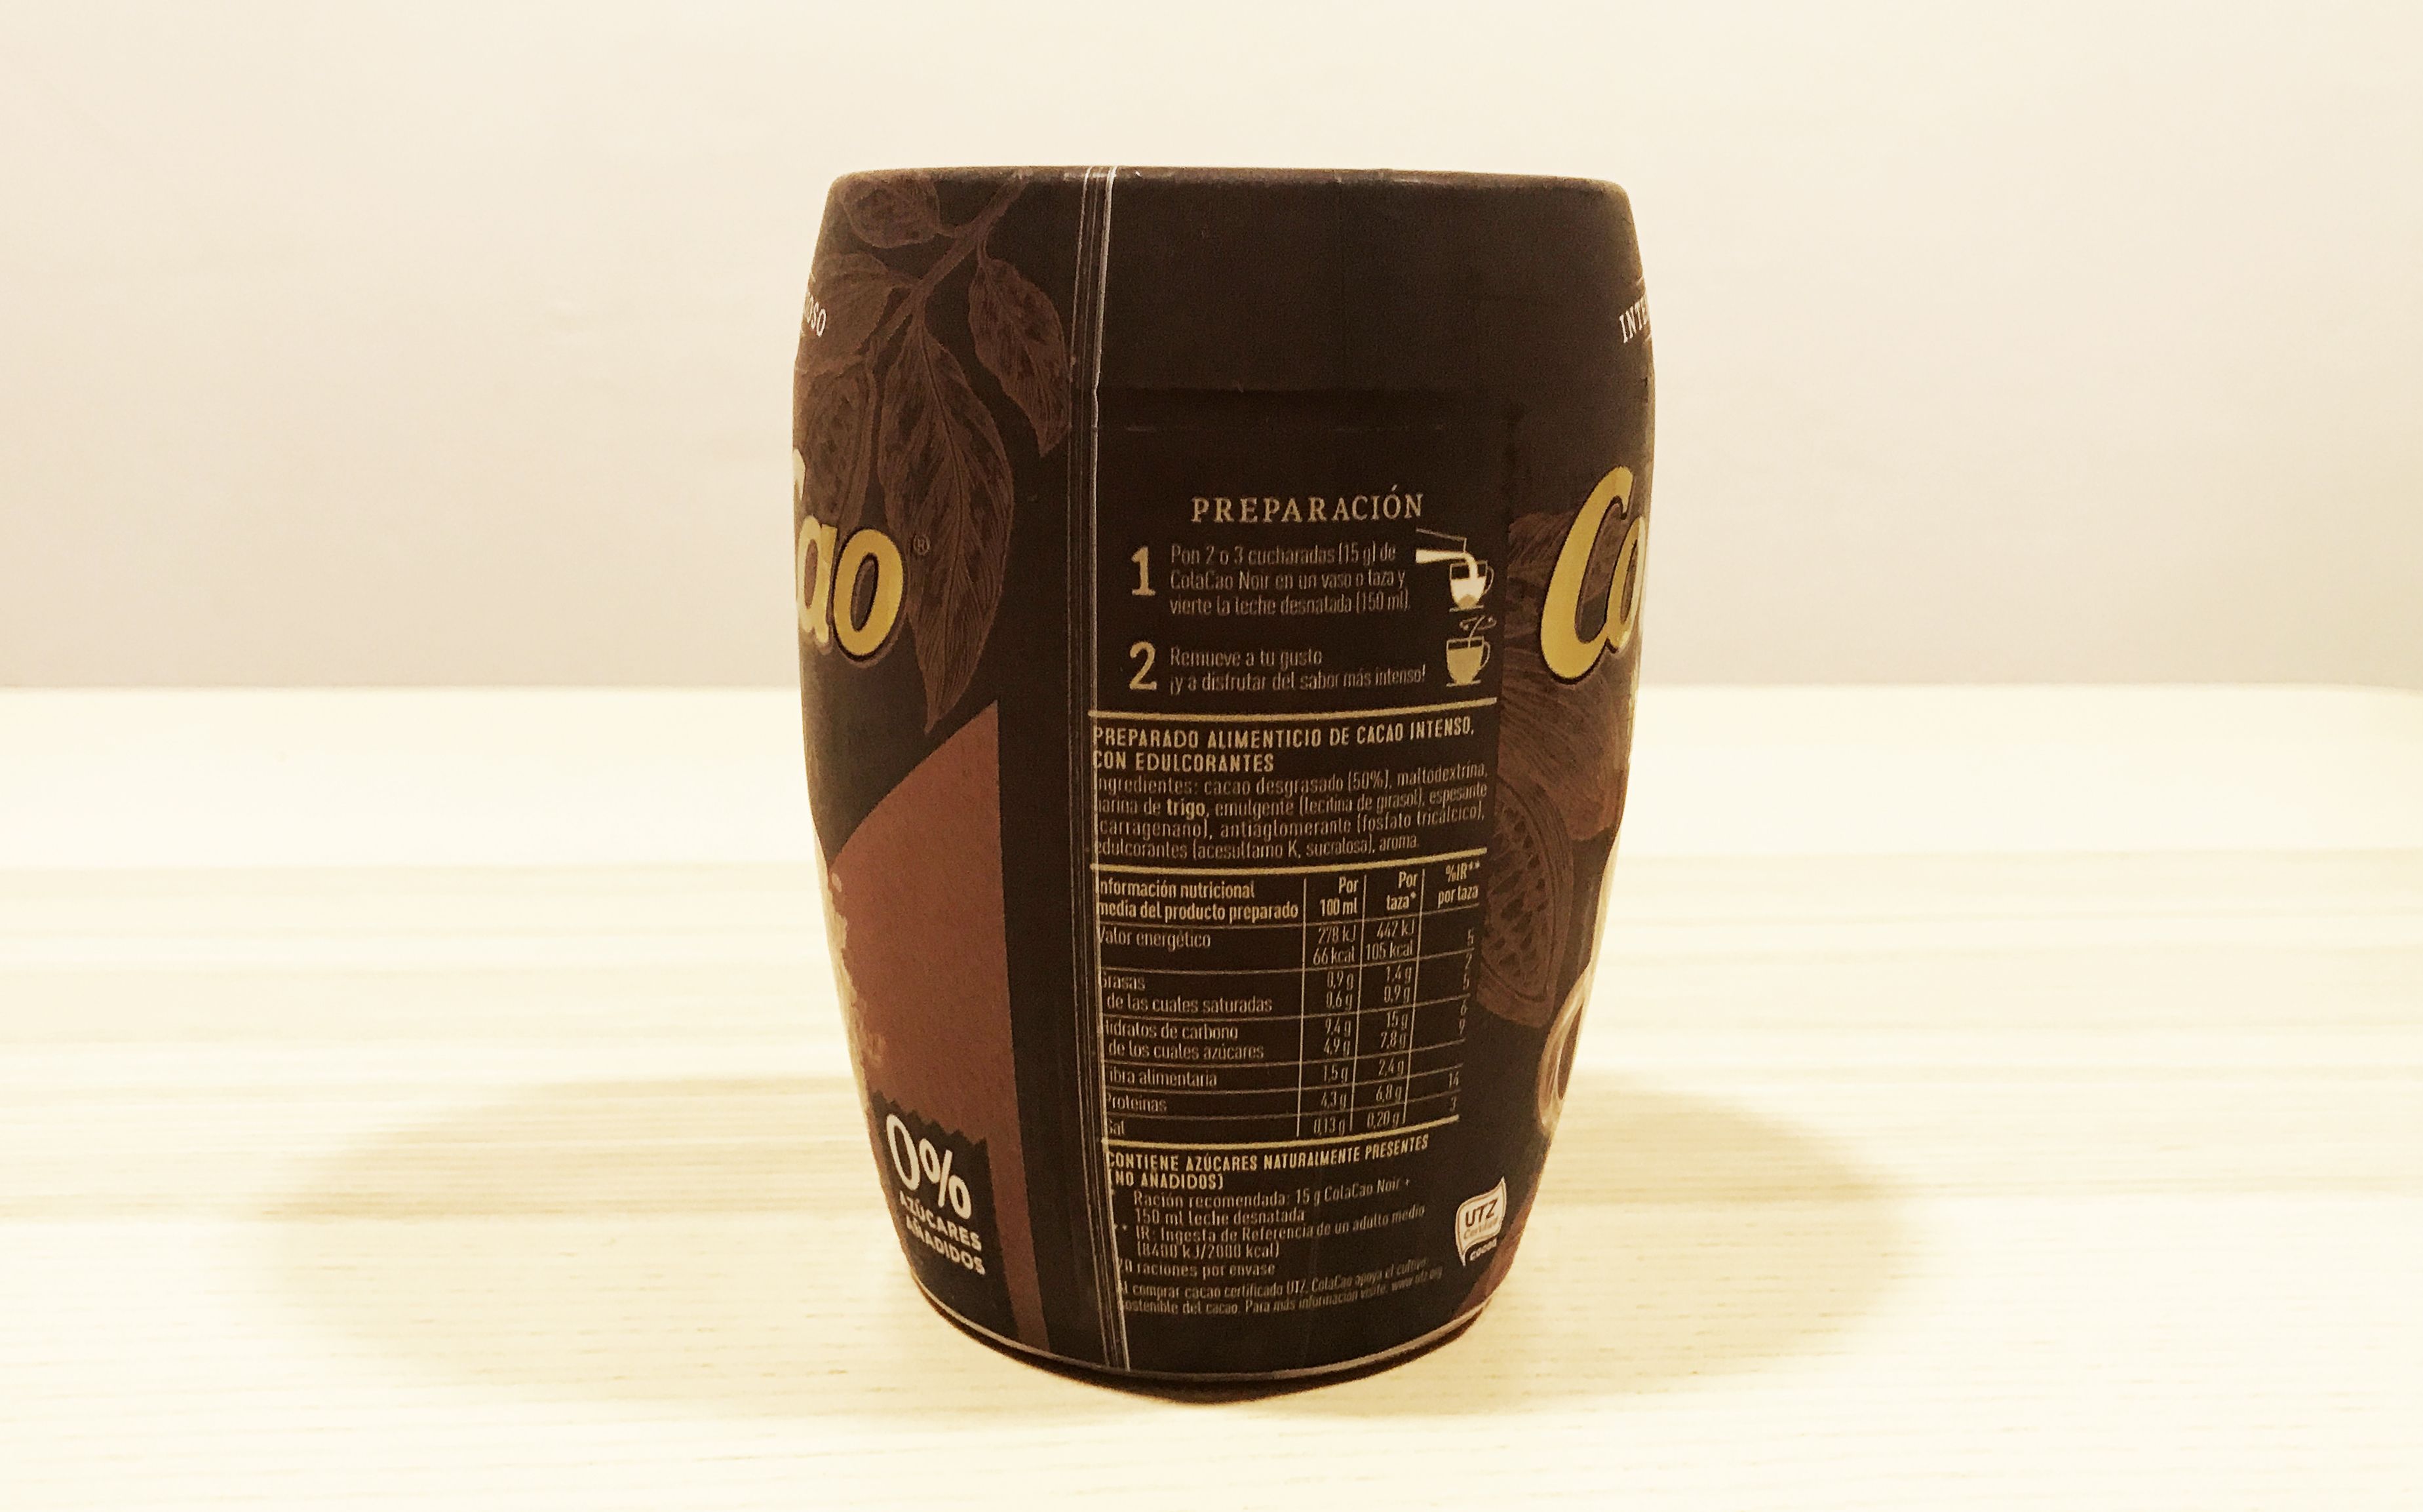 Colacao - Cola Cao - Compra Sostenible